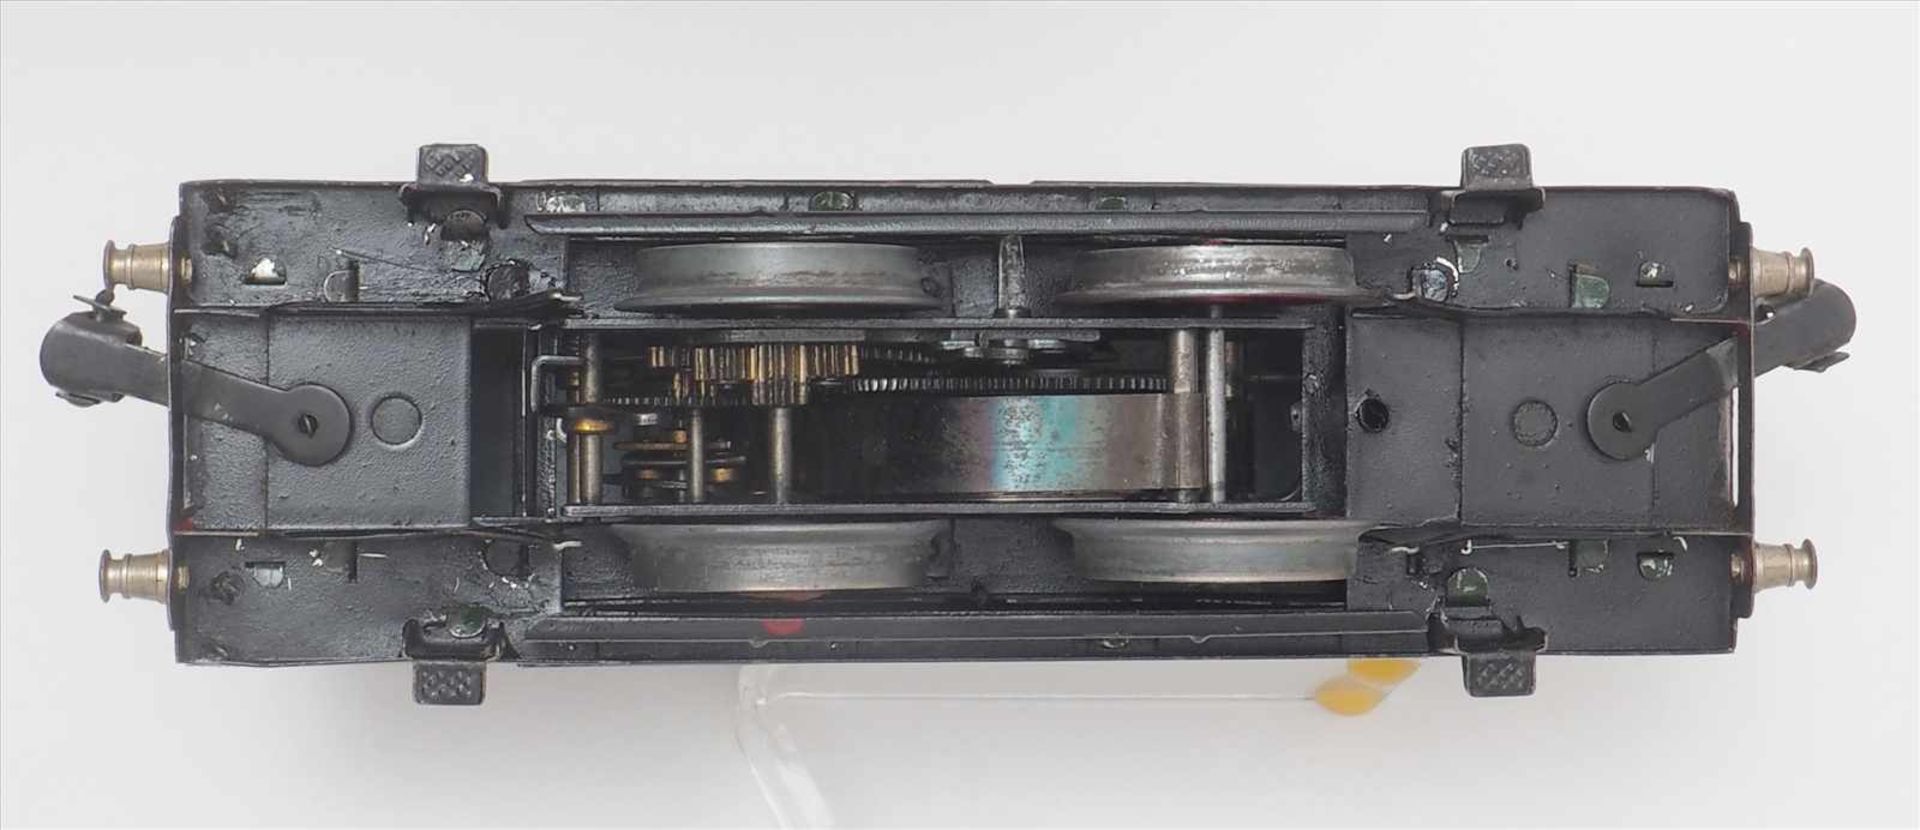 Märklin E-LokRS 910, ca. 1935. Spur 0. Uhrwerkantrieb. Zweiachsige E-Lok in grün. Guter Zustand, - Image 5 of 5